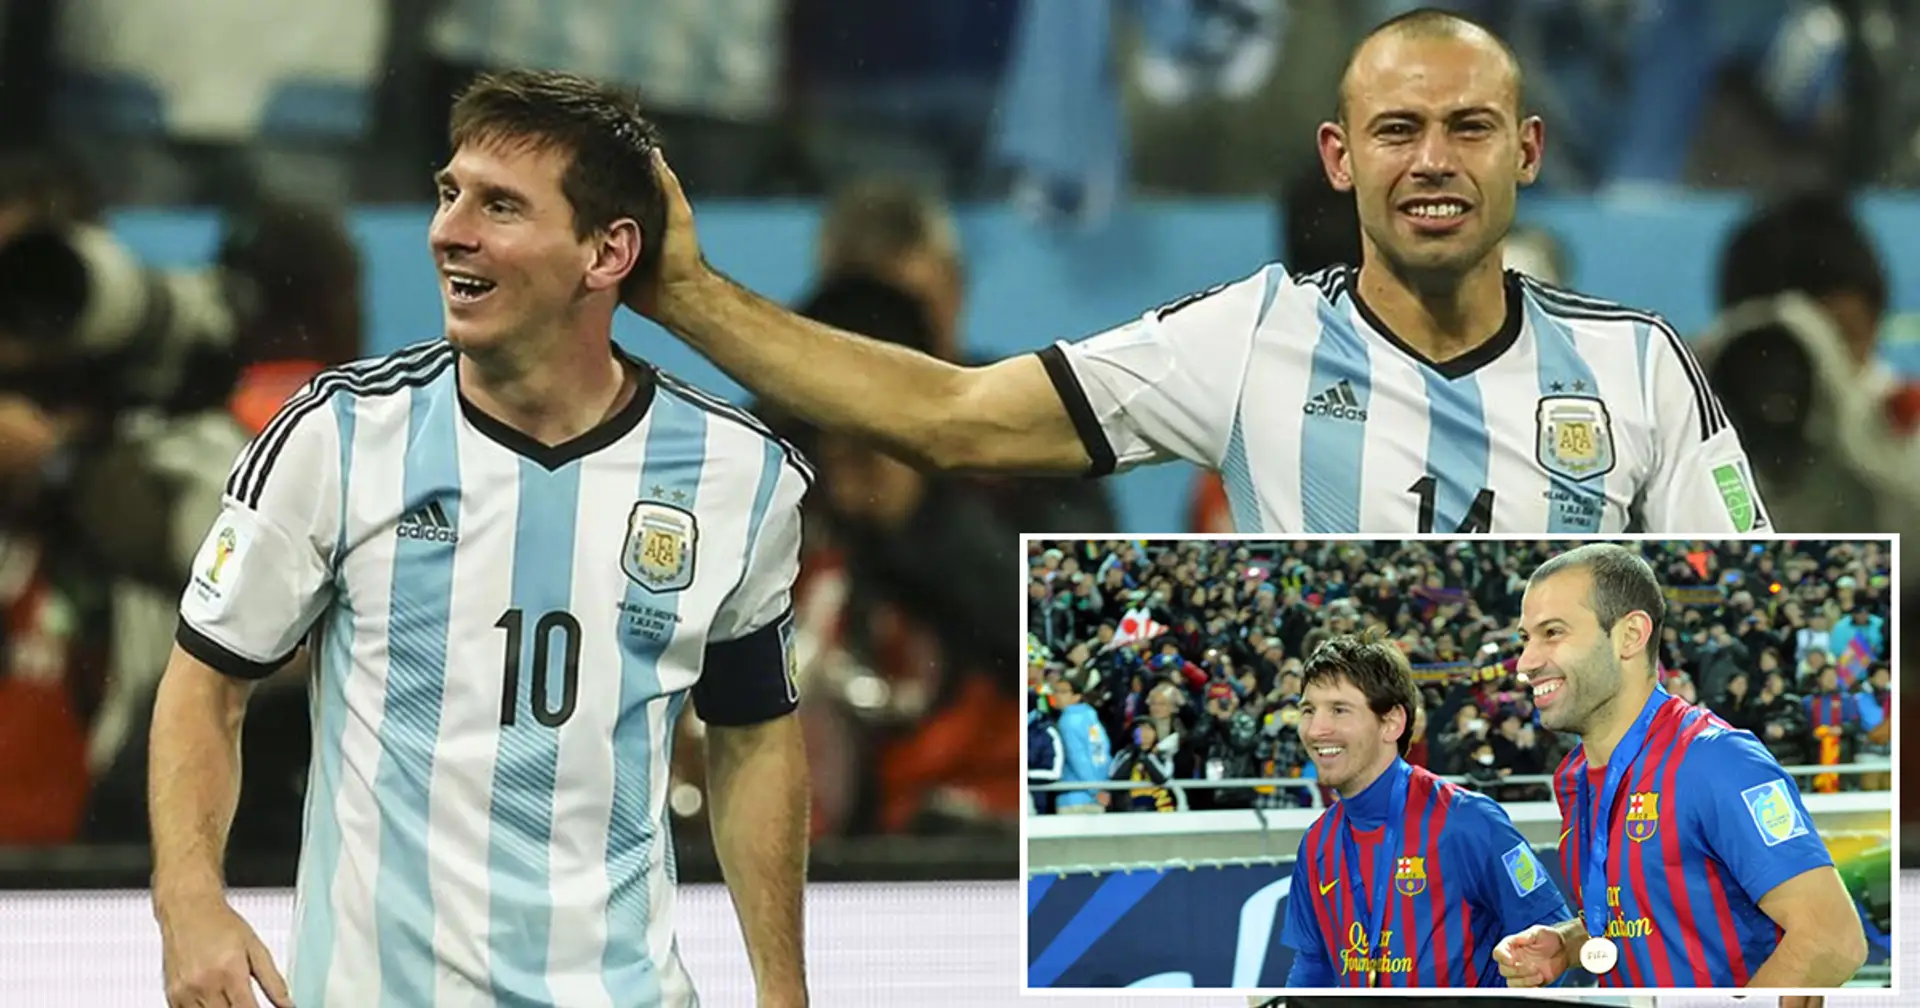 El emotivo mensaje de Mascherano a Messi tras igualar su récord